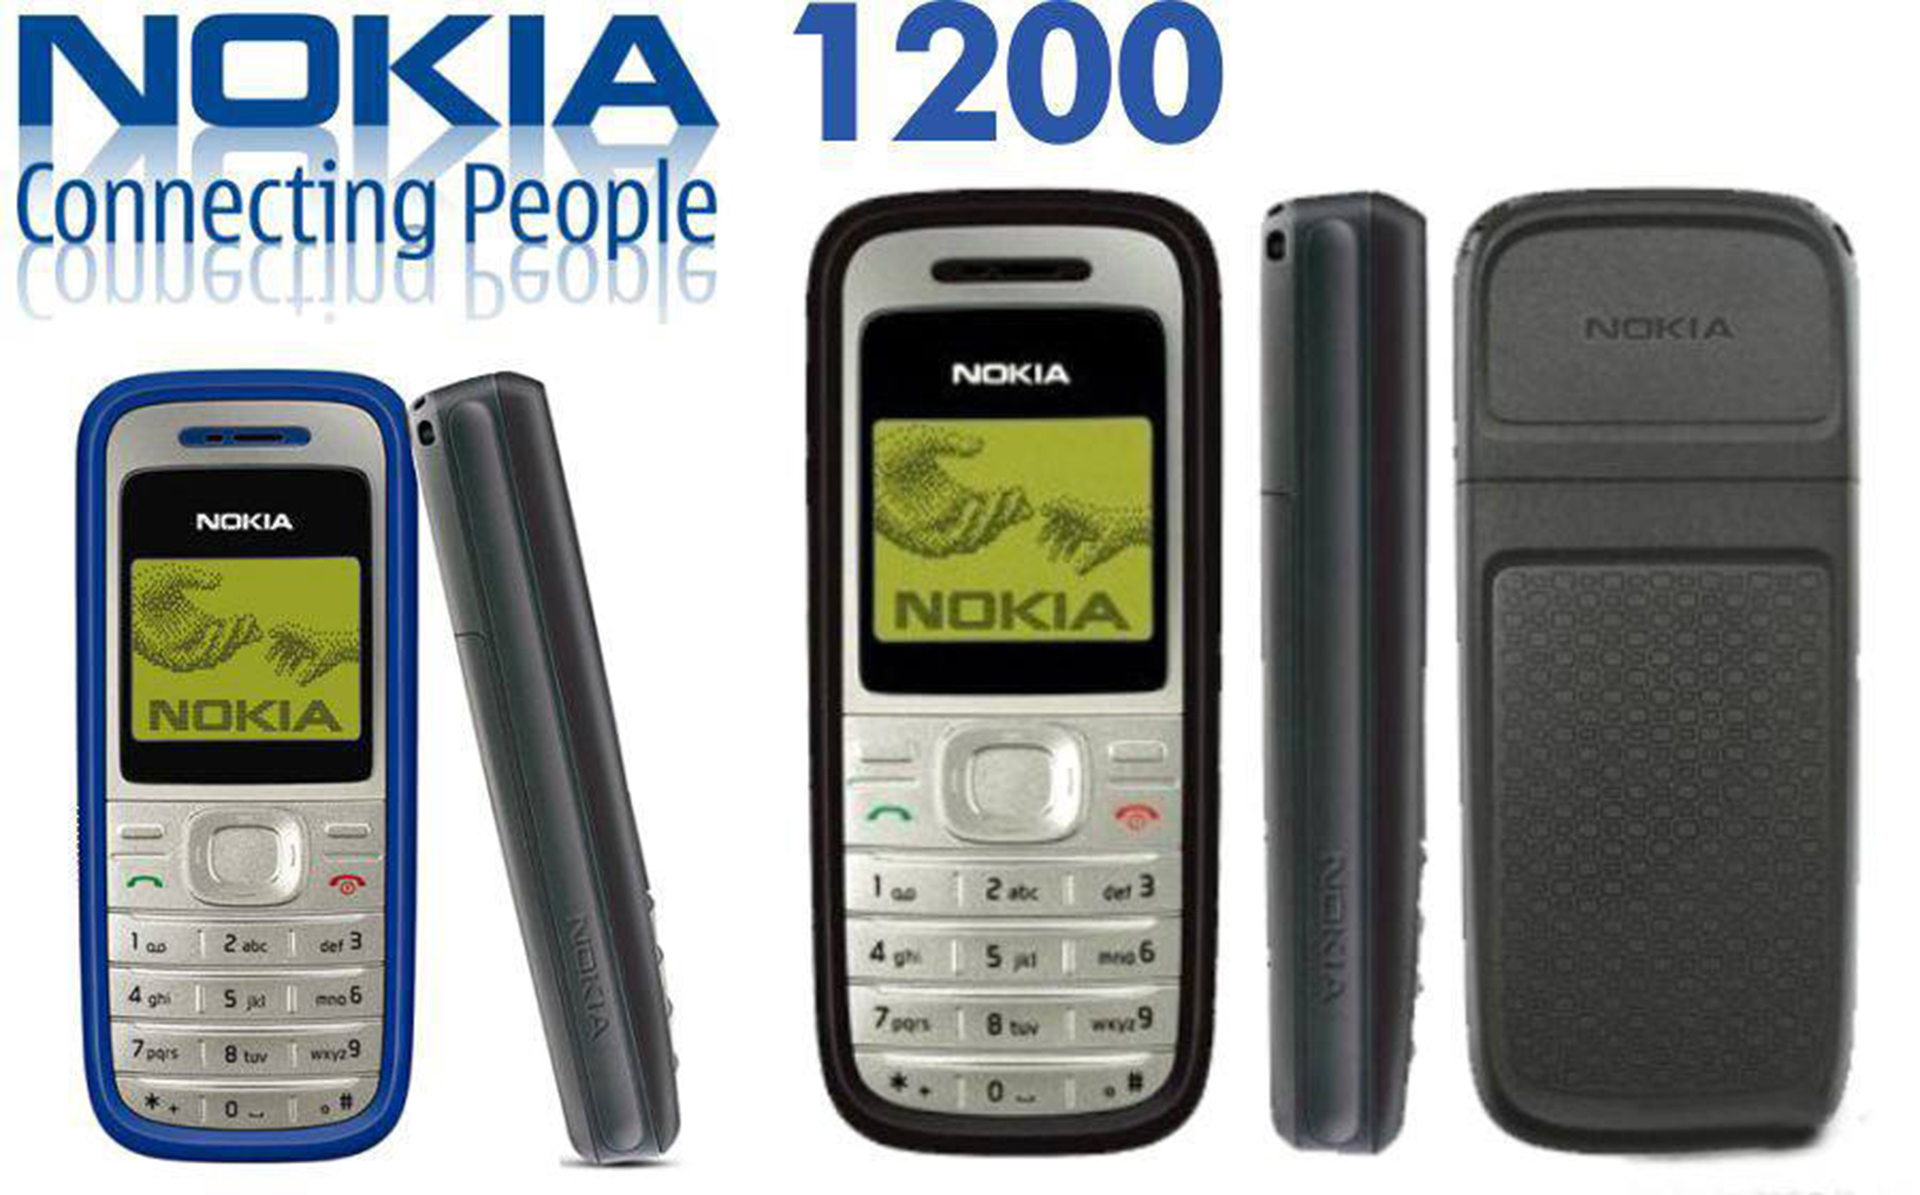 El teléfono Nokia 1200 contaba con hasta 32 sonidos polifónicos de llamada y eran considerados como características claves para vender los dispositivos a los usuarios.